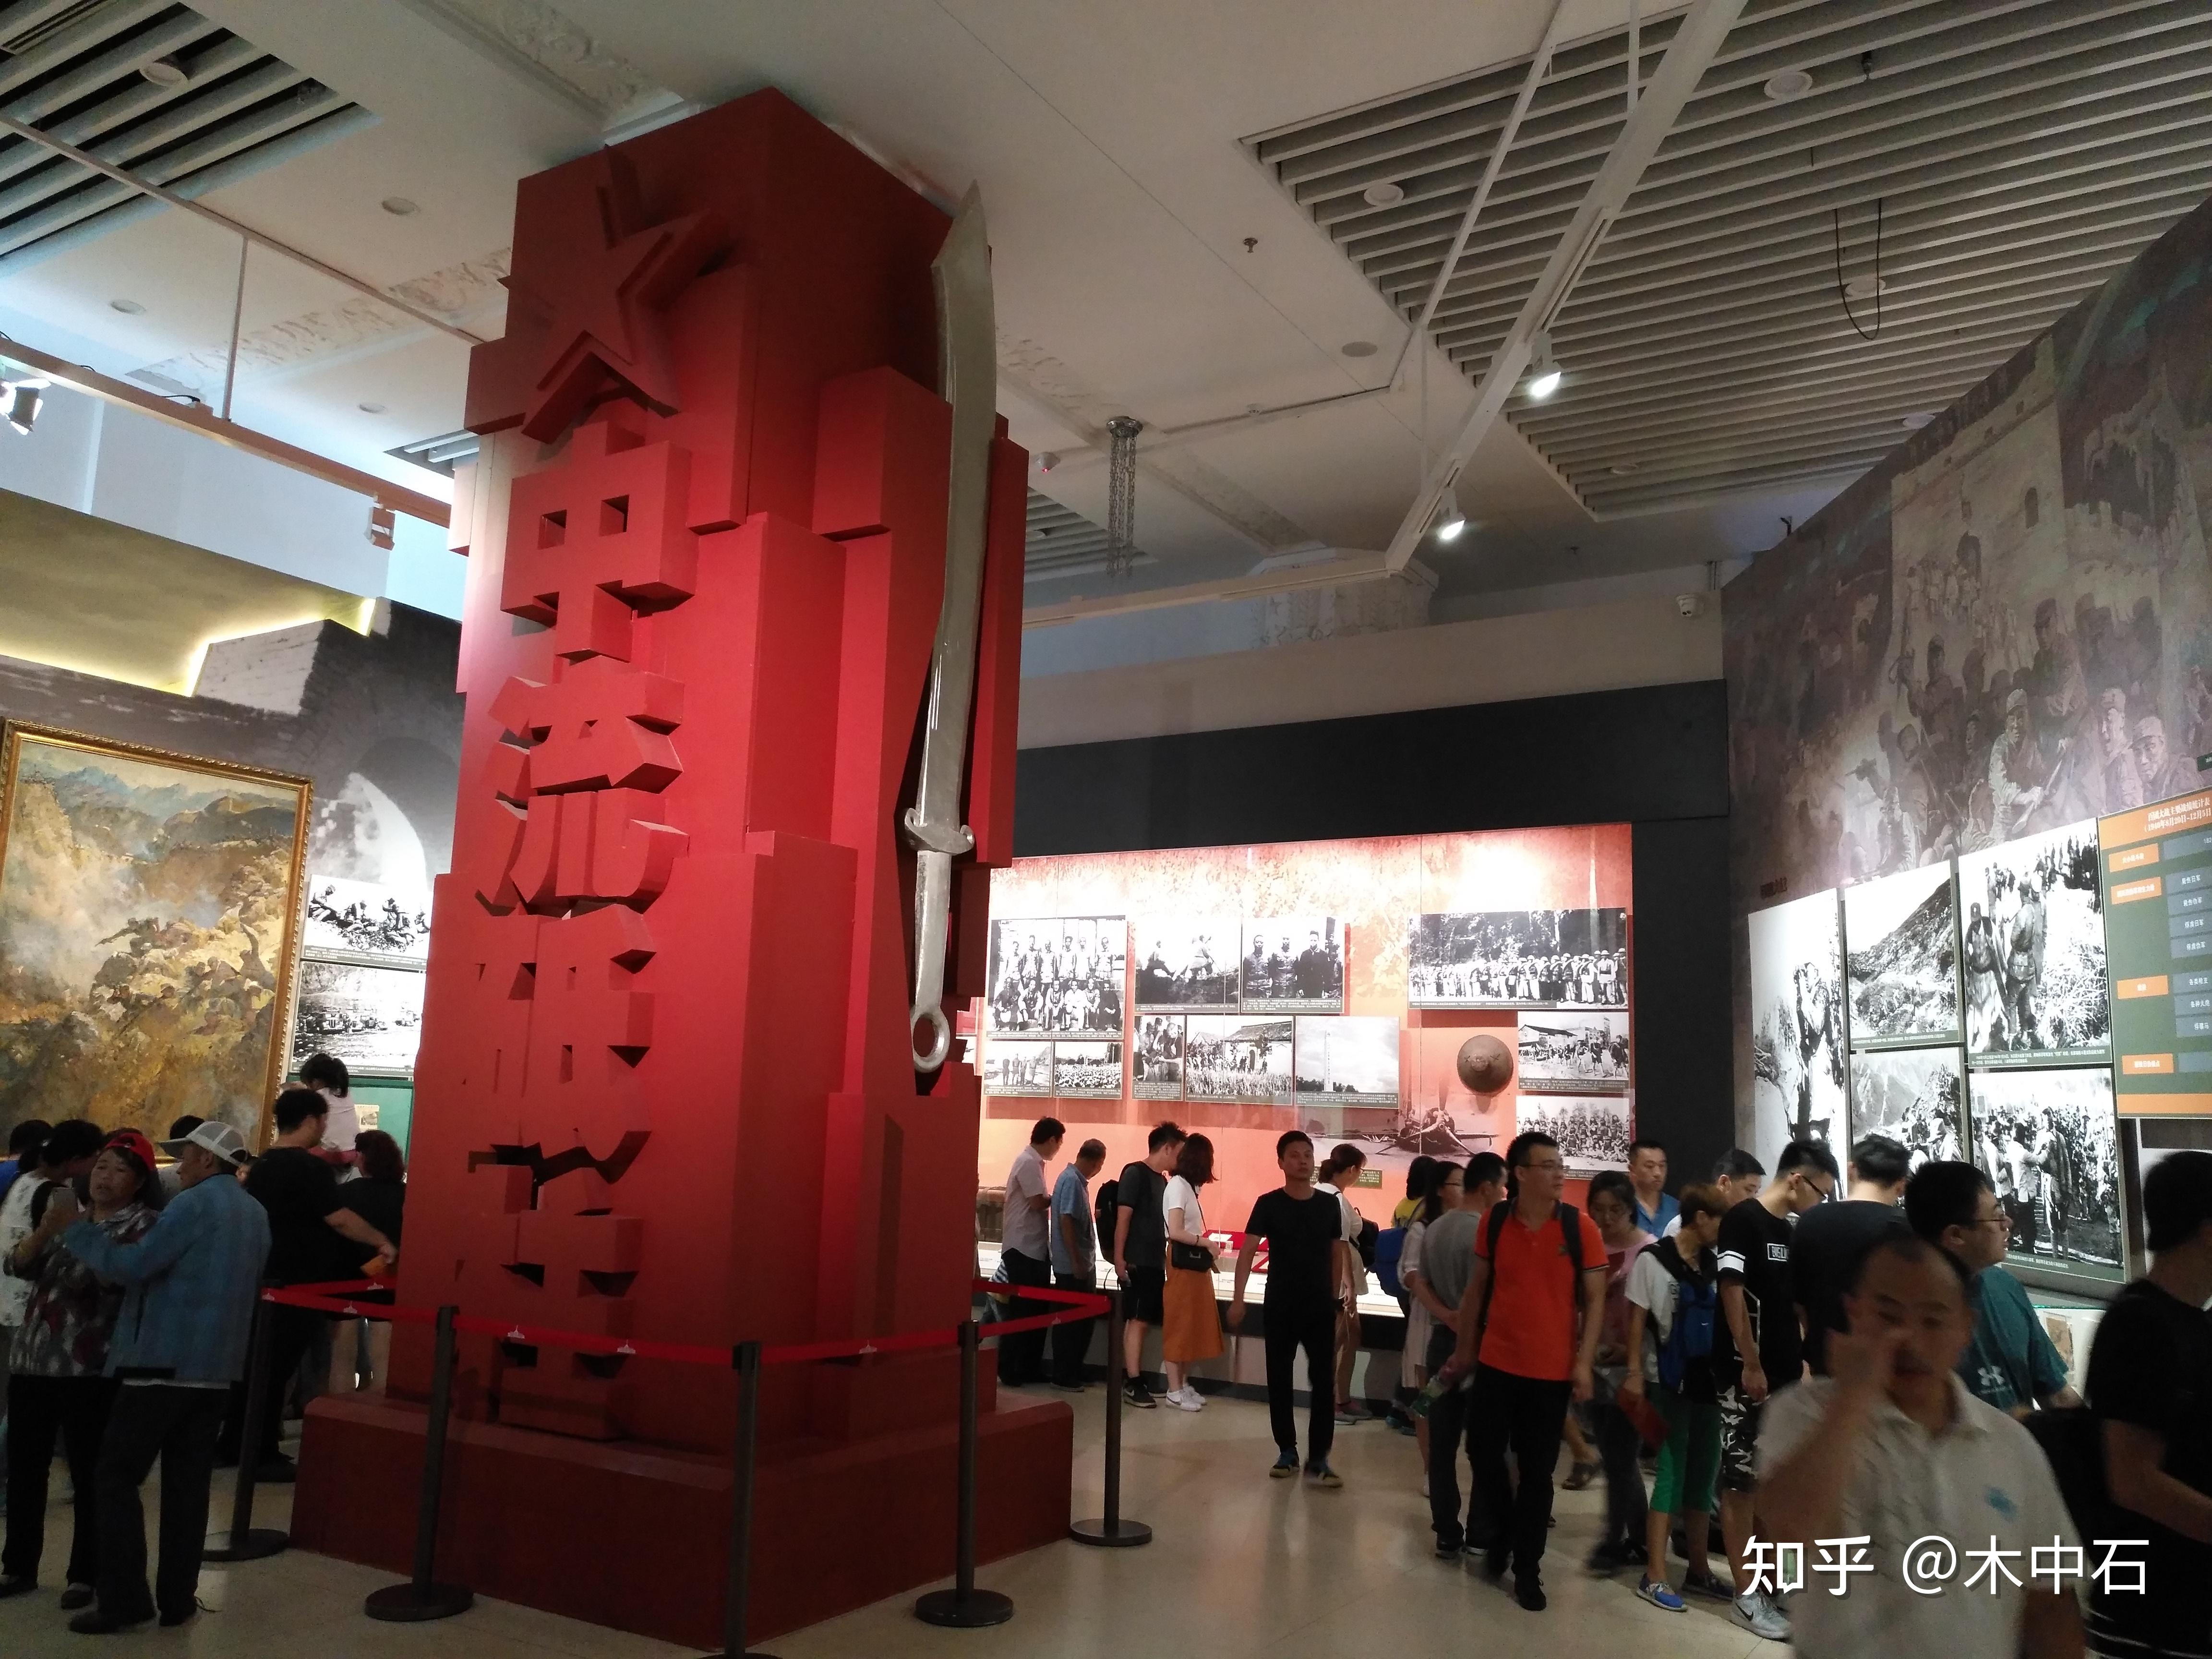 2017年9月9日,我怀着崇敬的心情,参观了中国人民革命军事博物馆铭记